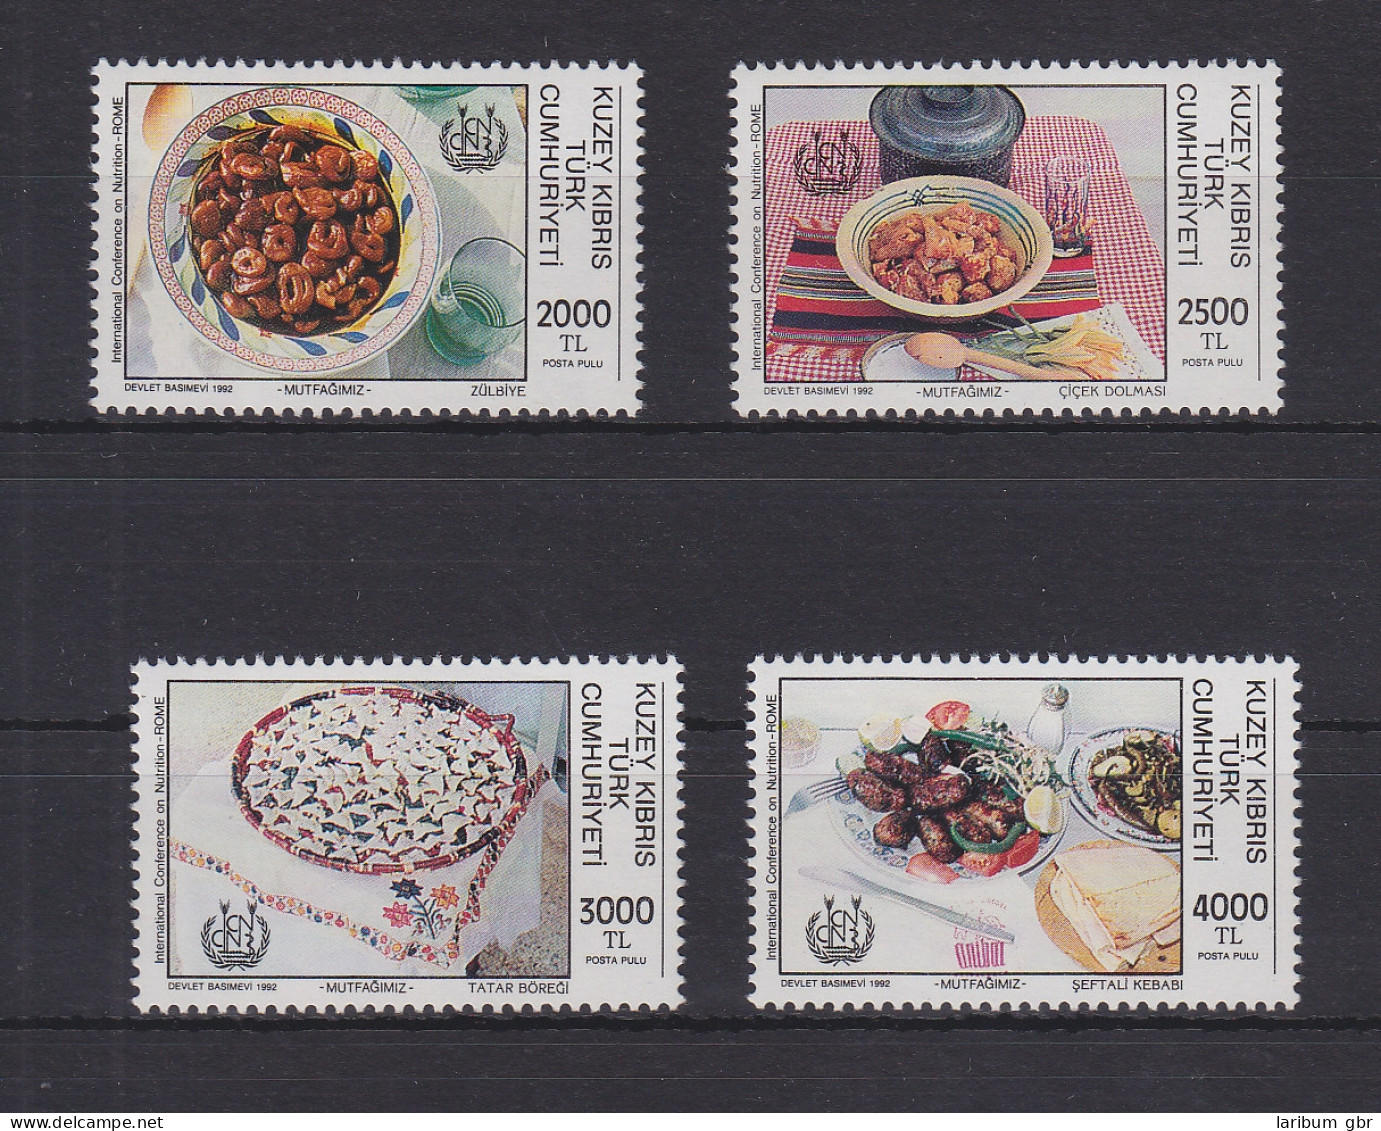 Türkisch-Zypern 347-350 Postfrisch Ernährung, Cyprus MNH #GE111 - Oblitérés